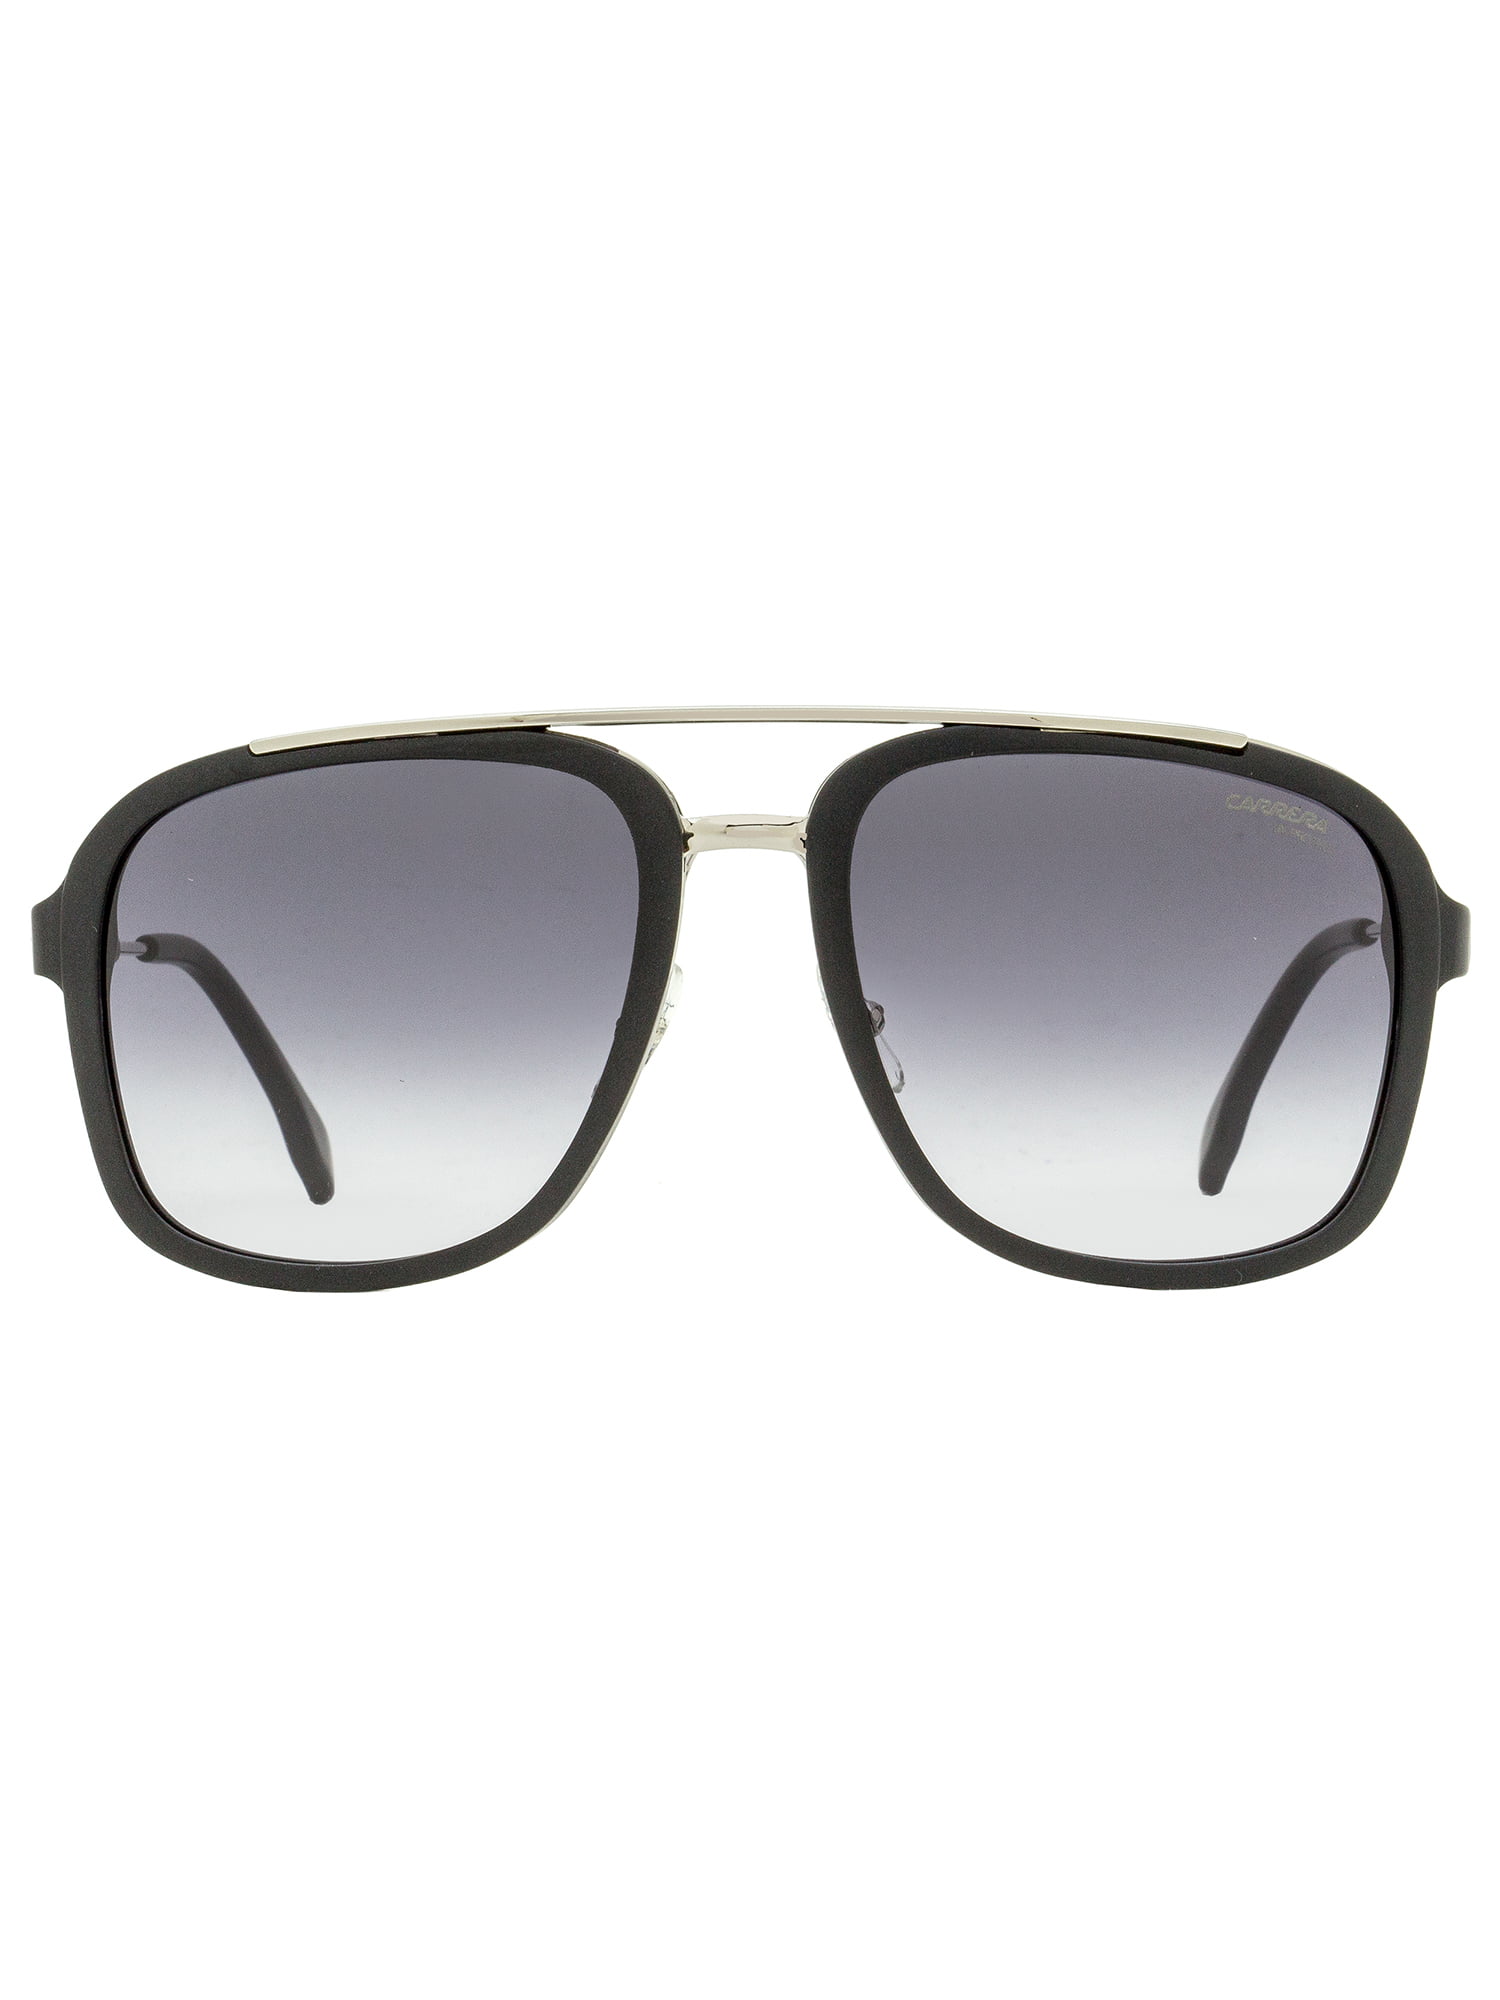 Carrera Grey Gradient Square Unisex Sunglasses CARRERA 133/S 0T17/9O 57 -  